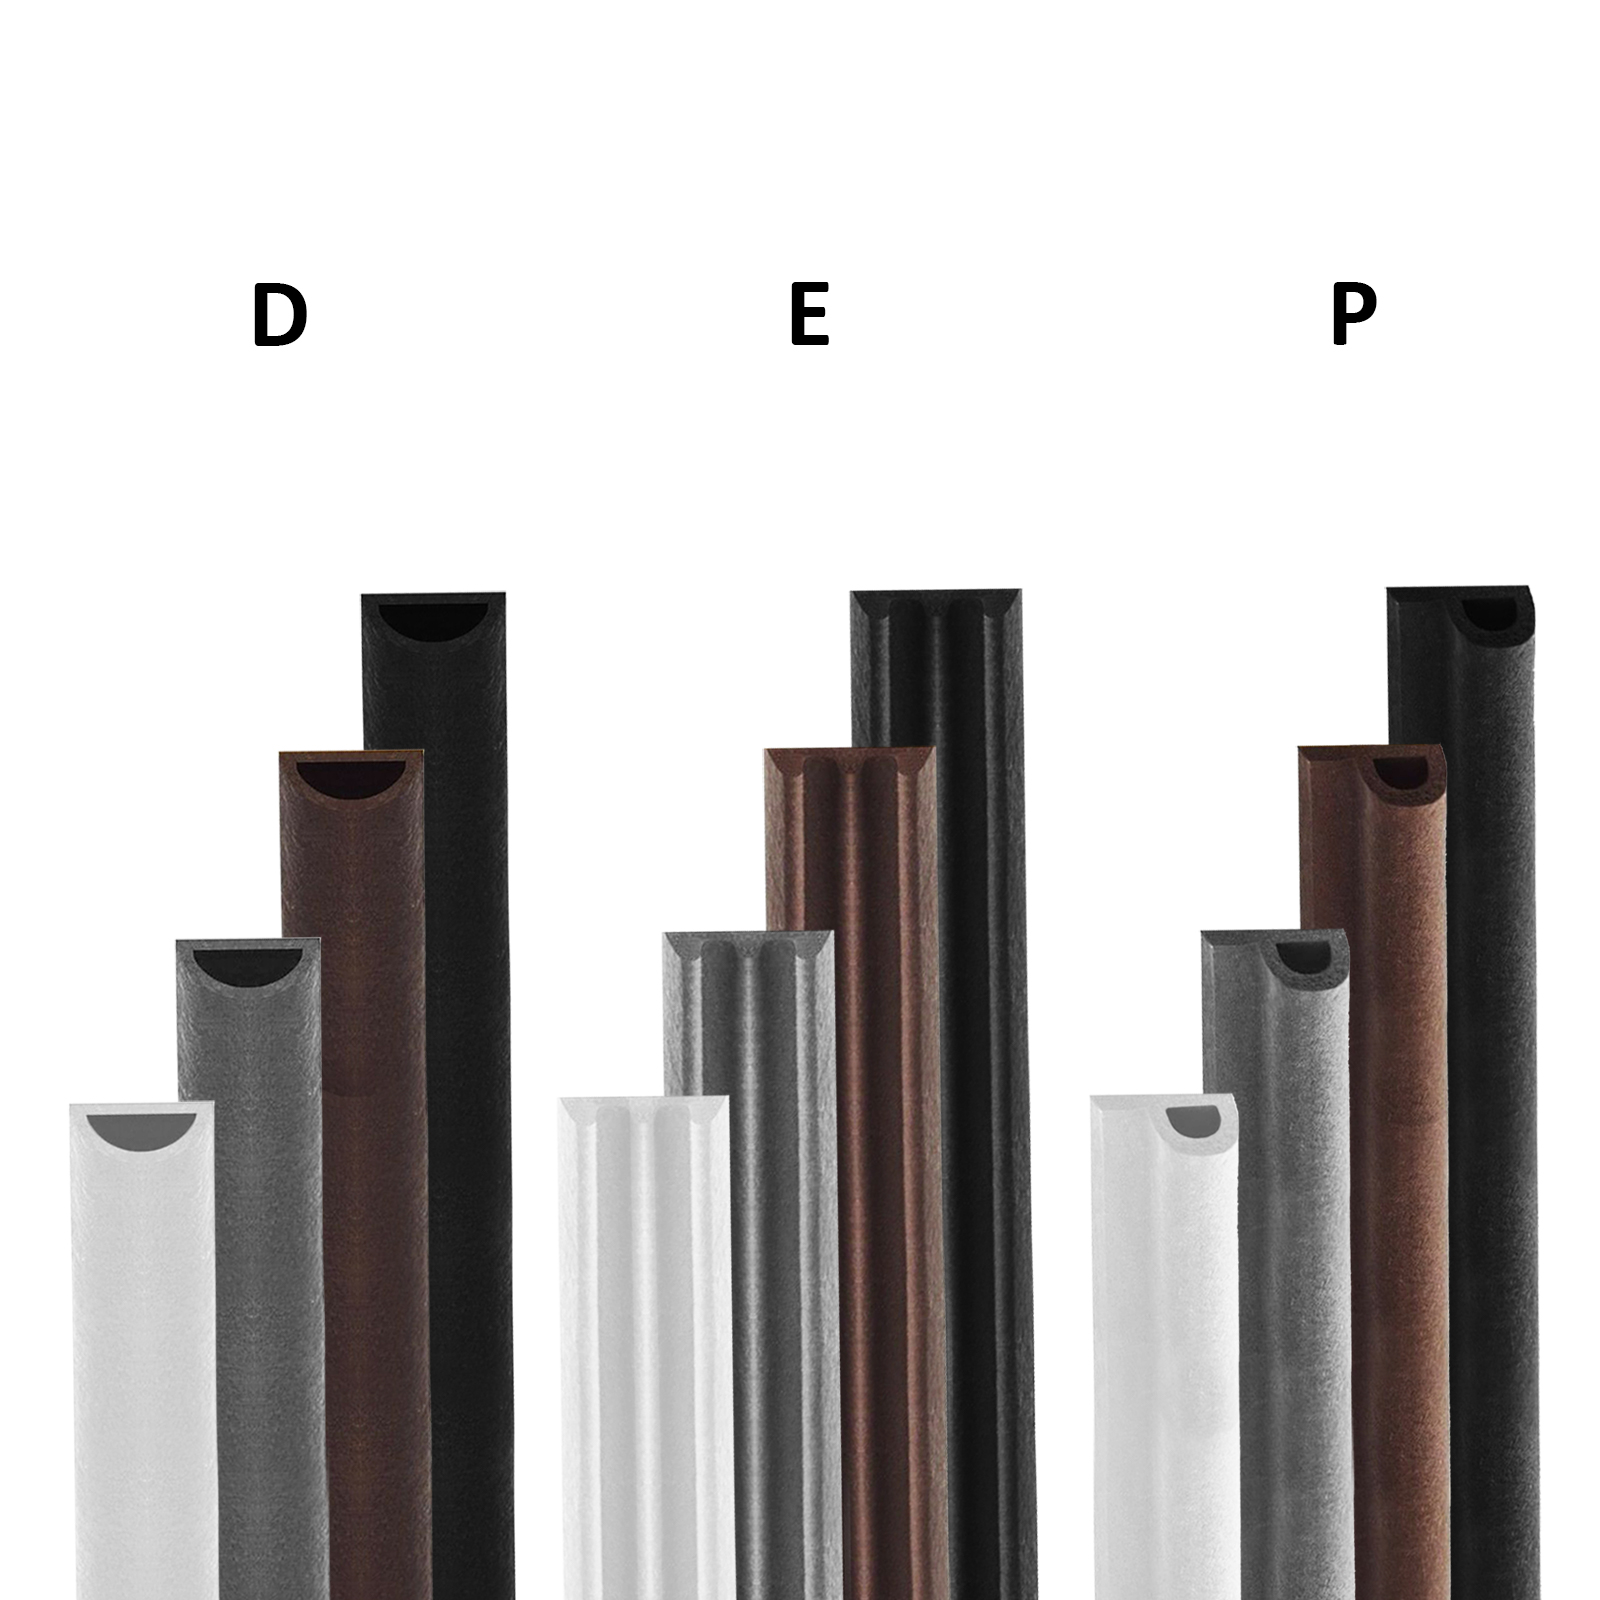 Samolepicí těsnění do oken a dveří typ E,P,D 2x3m Barva: Černá, Model: D